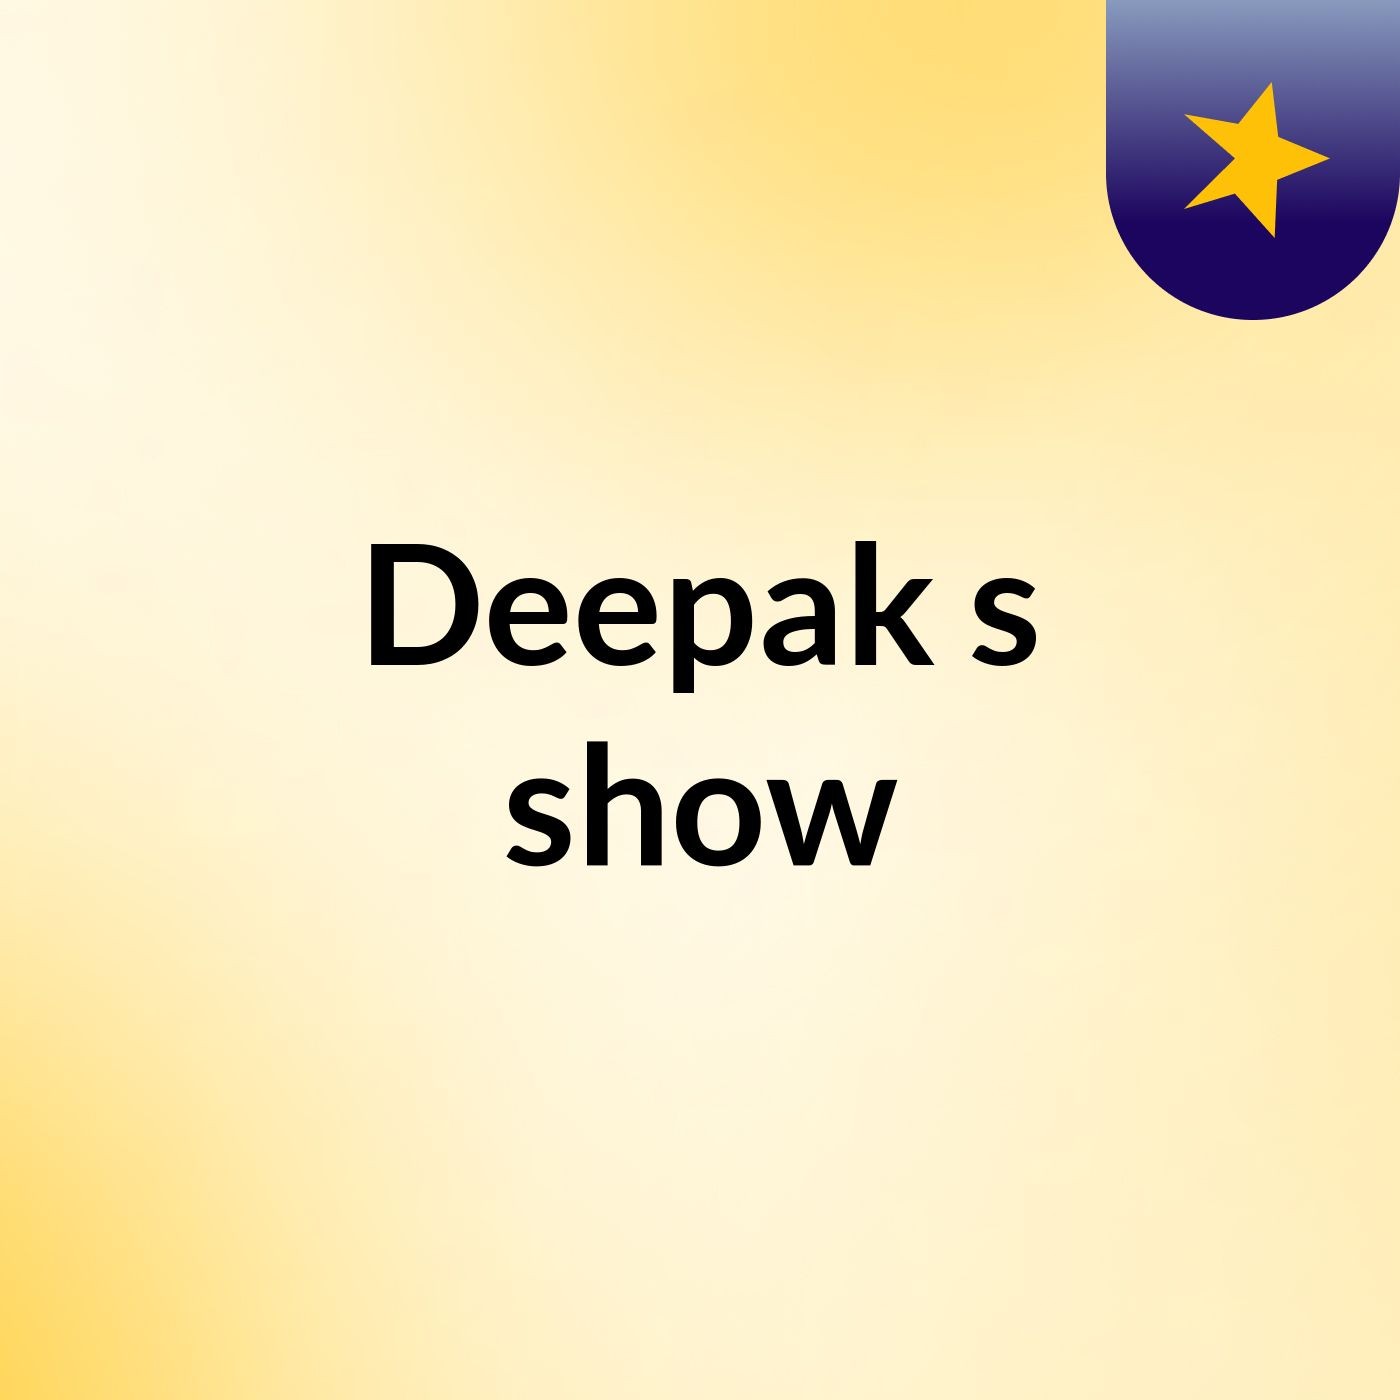 Deepak's show